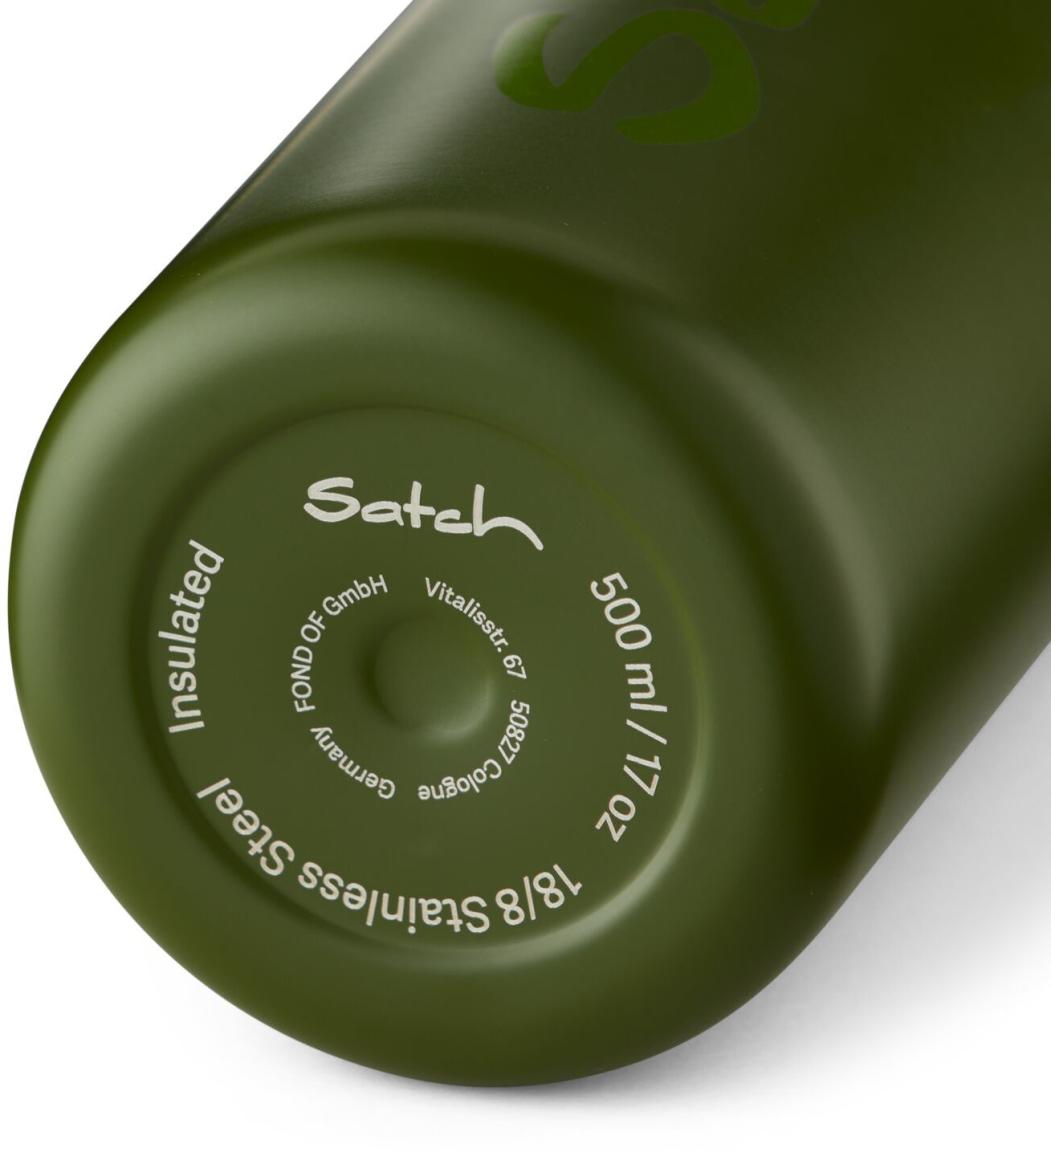 Satch Wasserflasche Edelstahl olivgrün isolierend spülmaschinenfest